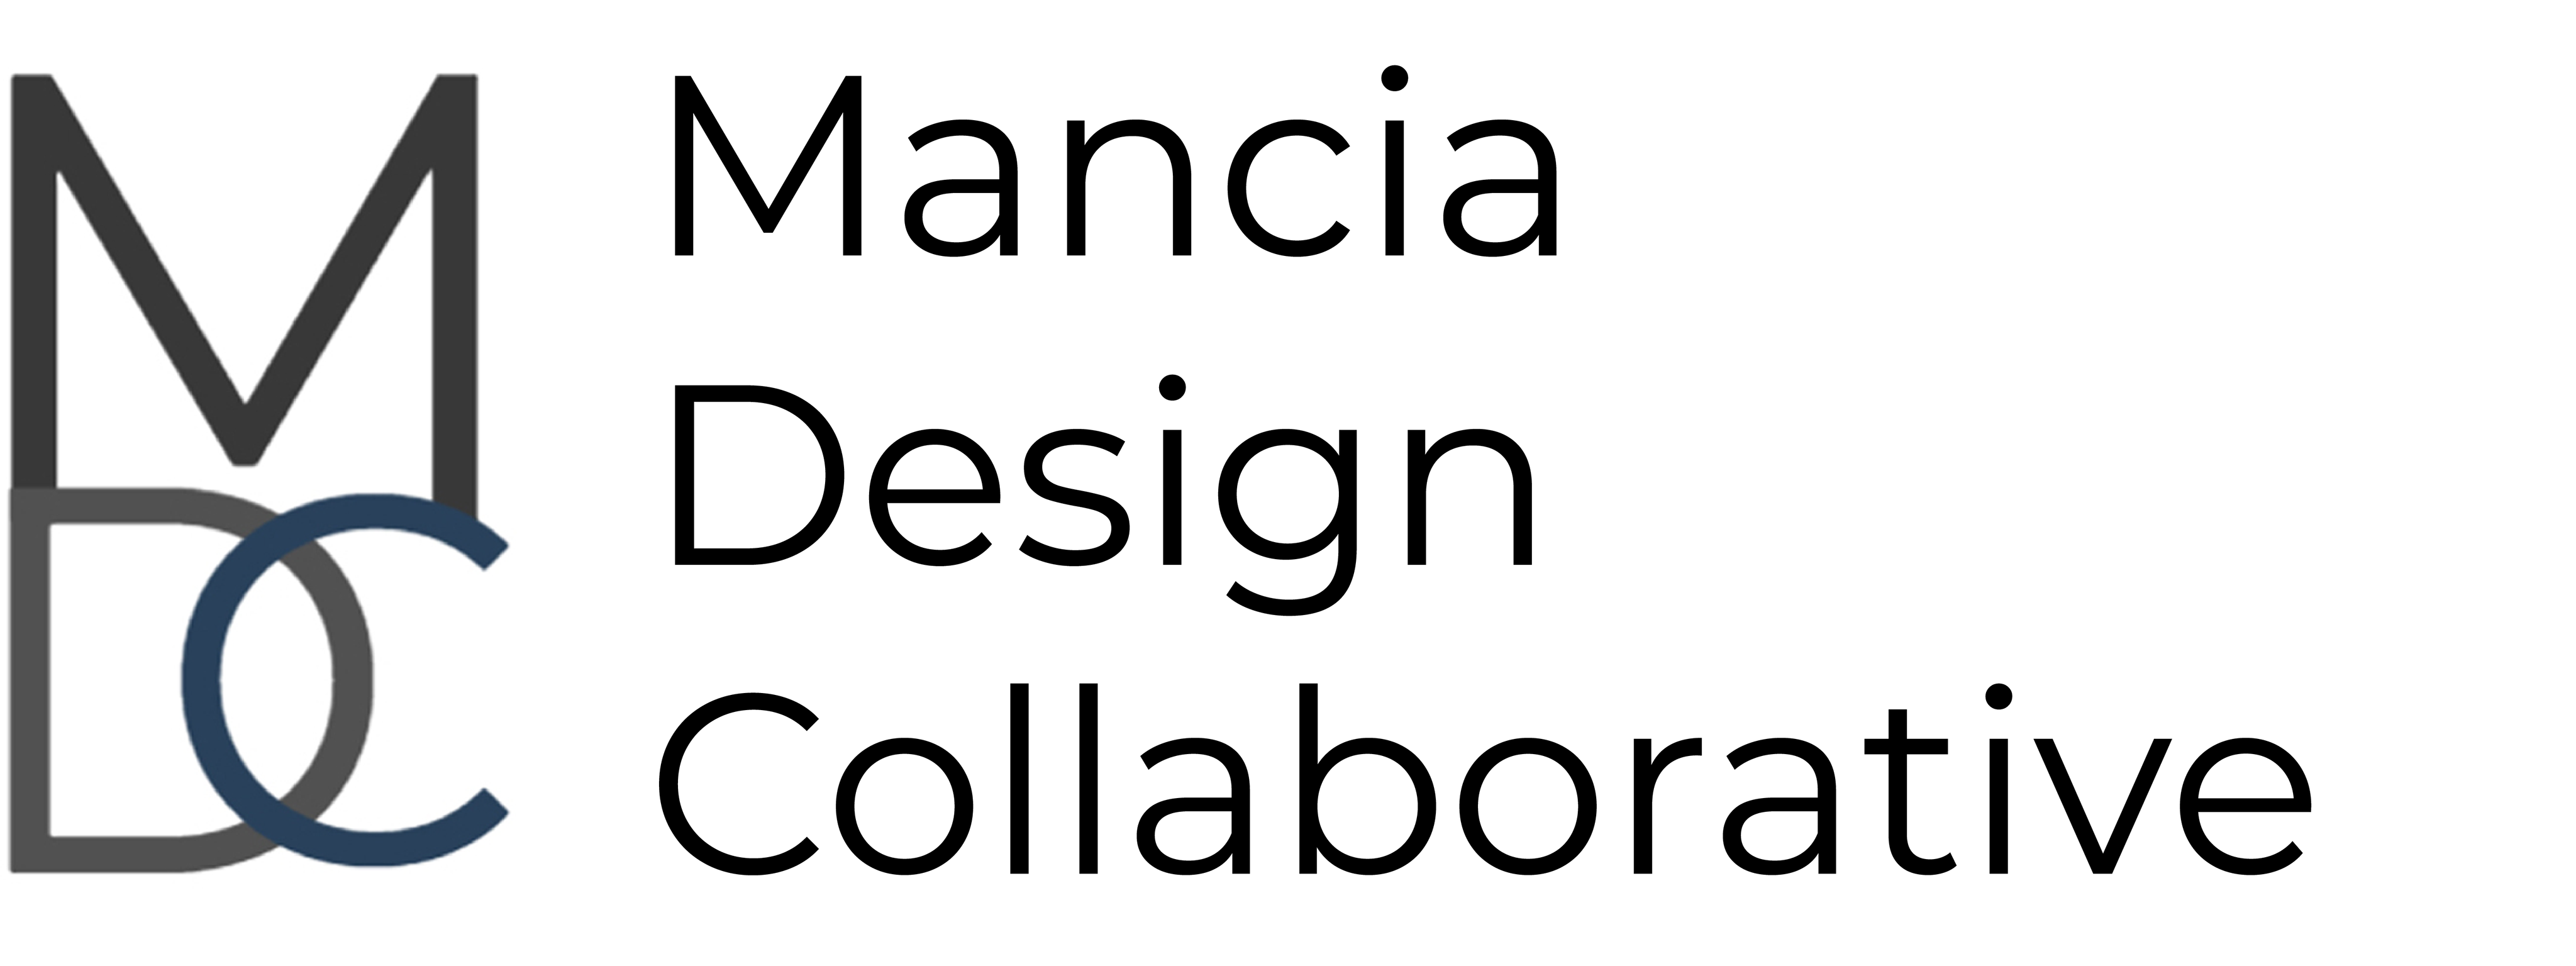 Mancia Design Collaborative